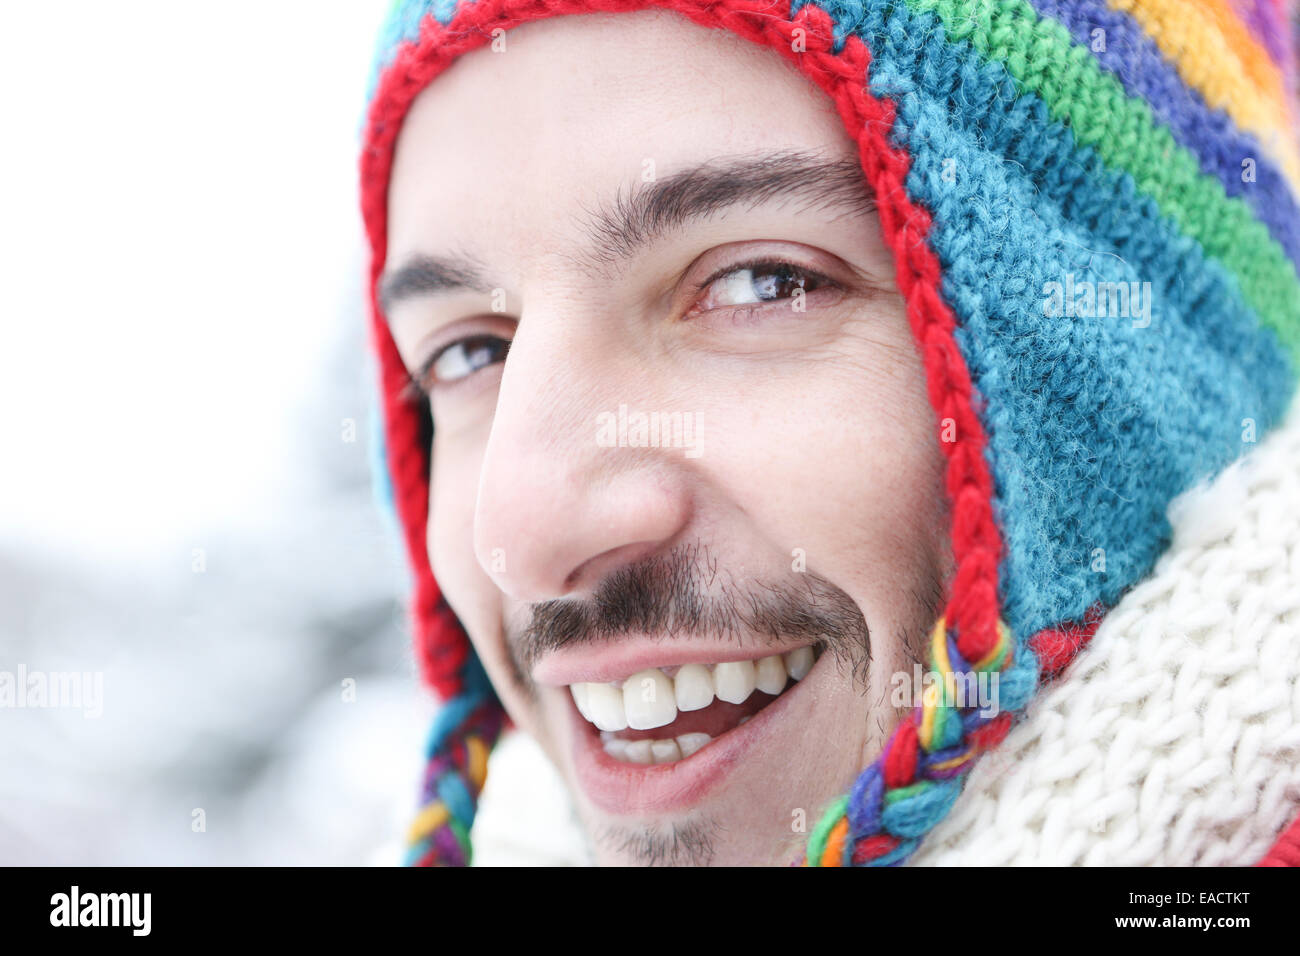 Glücklich lächelnd im Winter mit einem bunten Wollkappe Jüngling Stockfoto